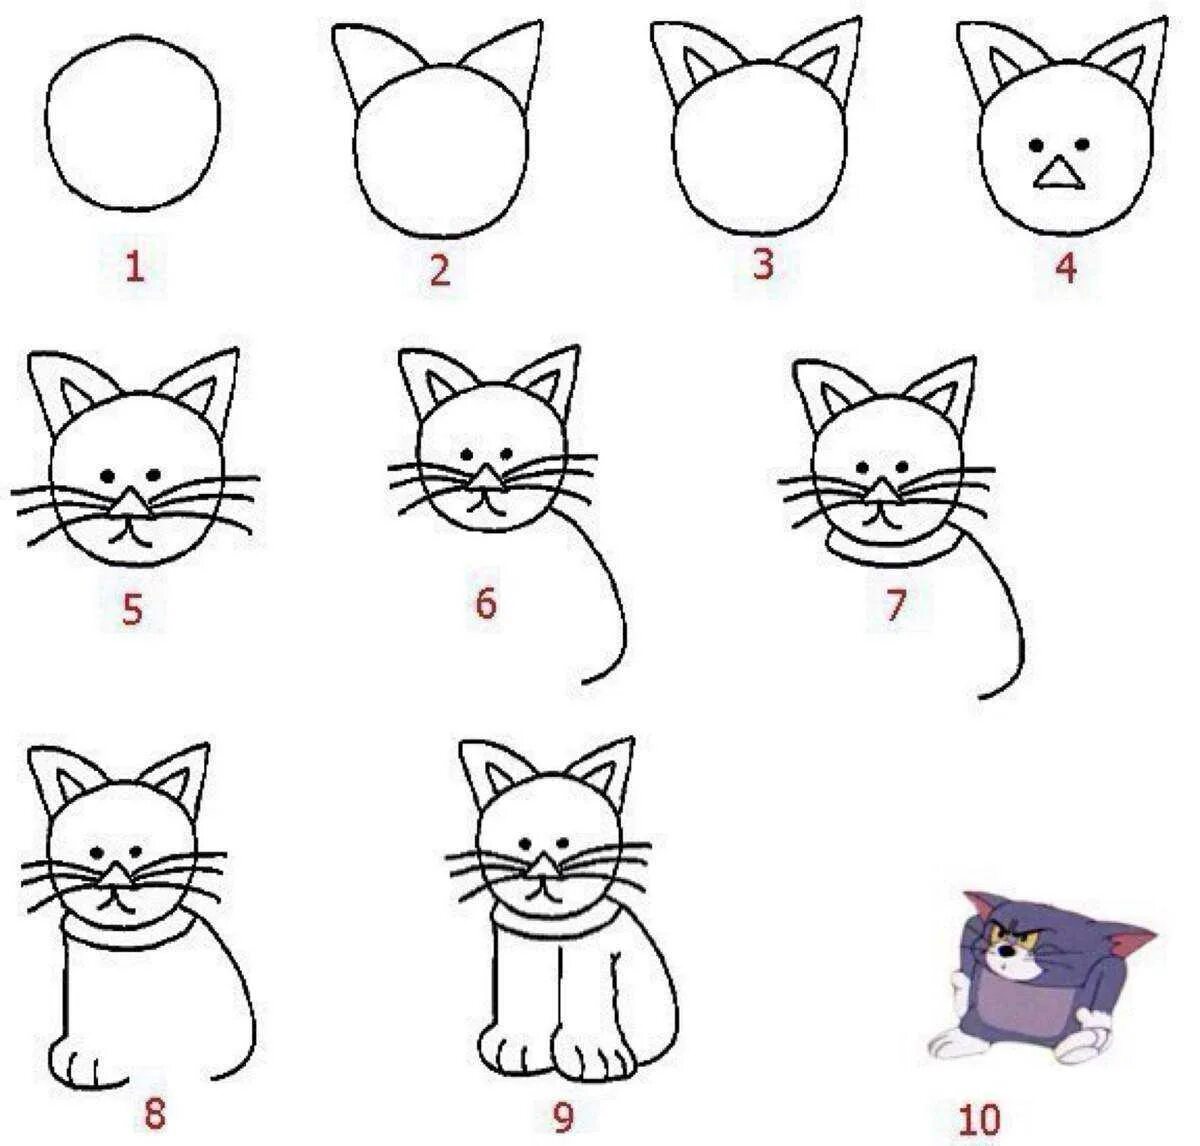 Нарисовать кошку пошагово для детей. Этапы рисования кошки для дошкольников. Поэтапное рисование кошки для детей. Рисуем кошку с детьми. Нарисовать кому легко